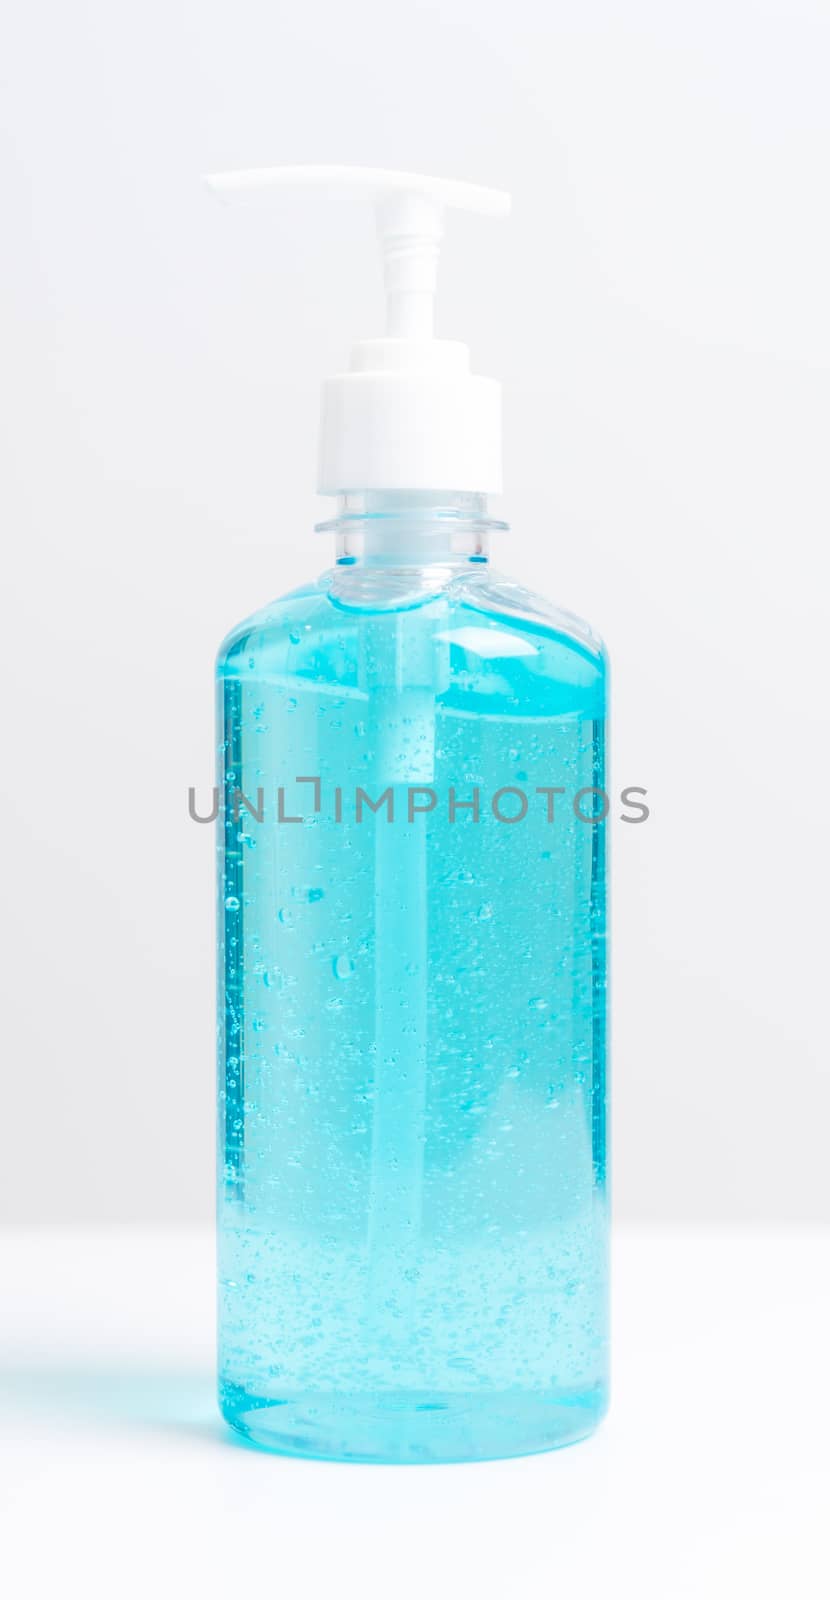 Plastic dispenser sanitizer alcohol gel pump bottle for washing hand hygiene prevention of coronavirus virus studio shot on white background